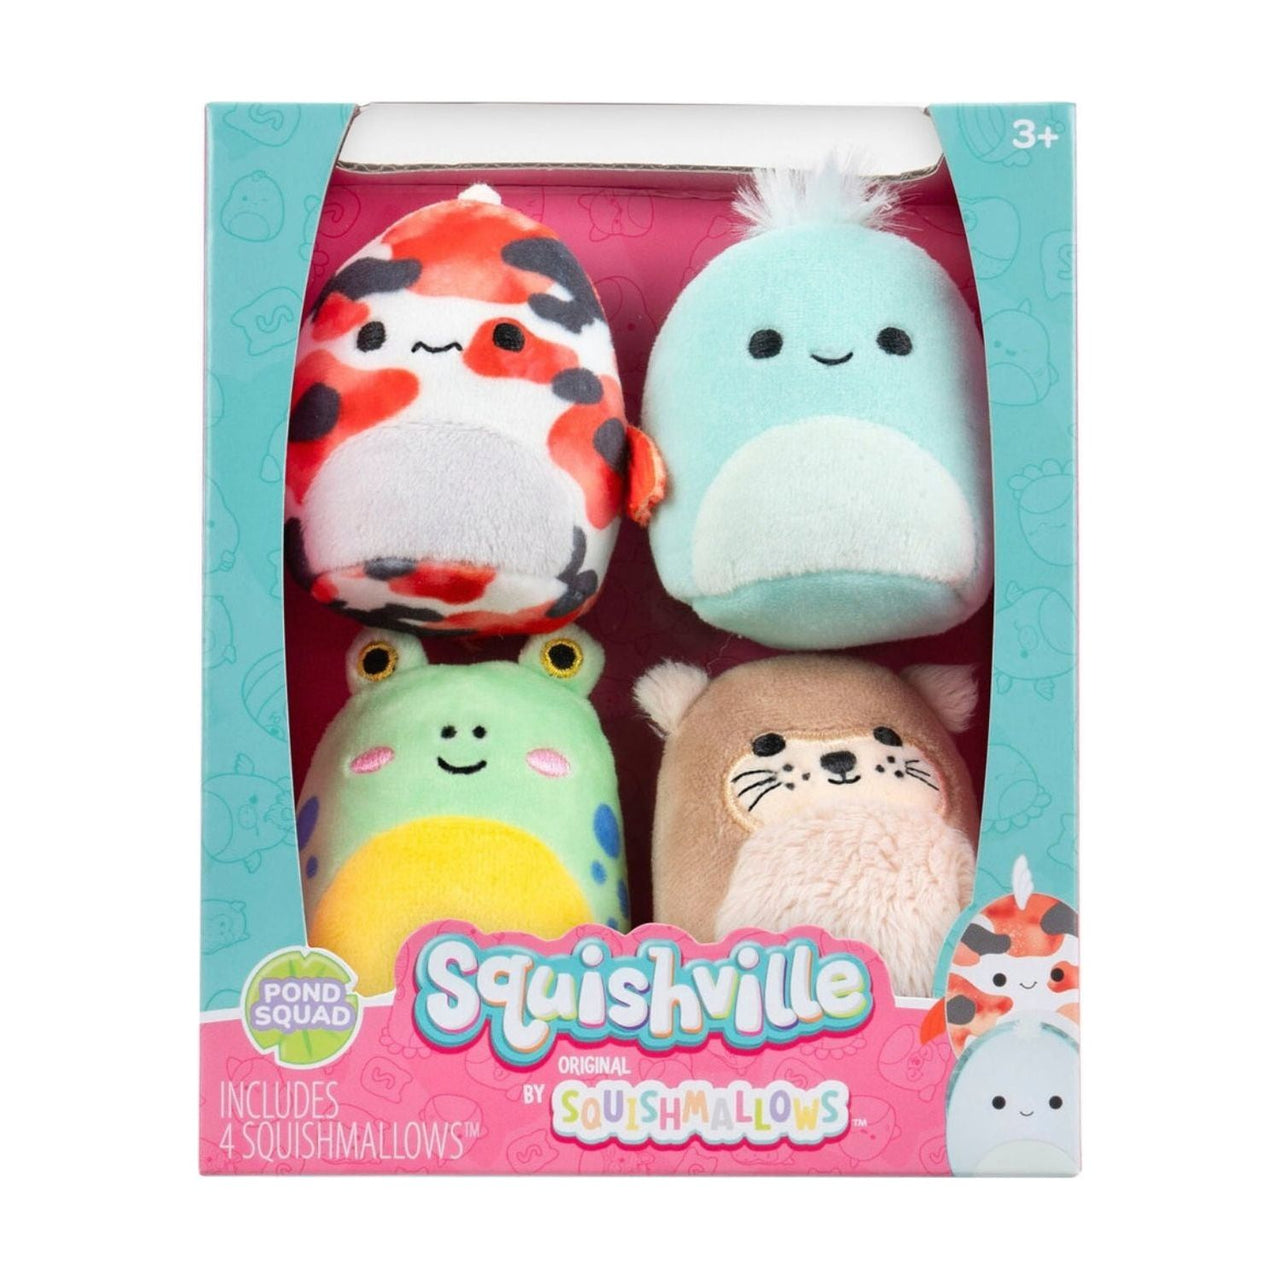 Squishville 2" Pond Squad 4 Pack Squishmallows